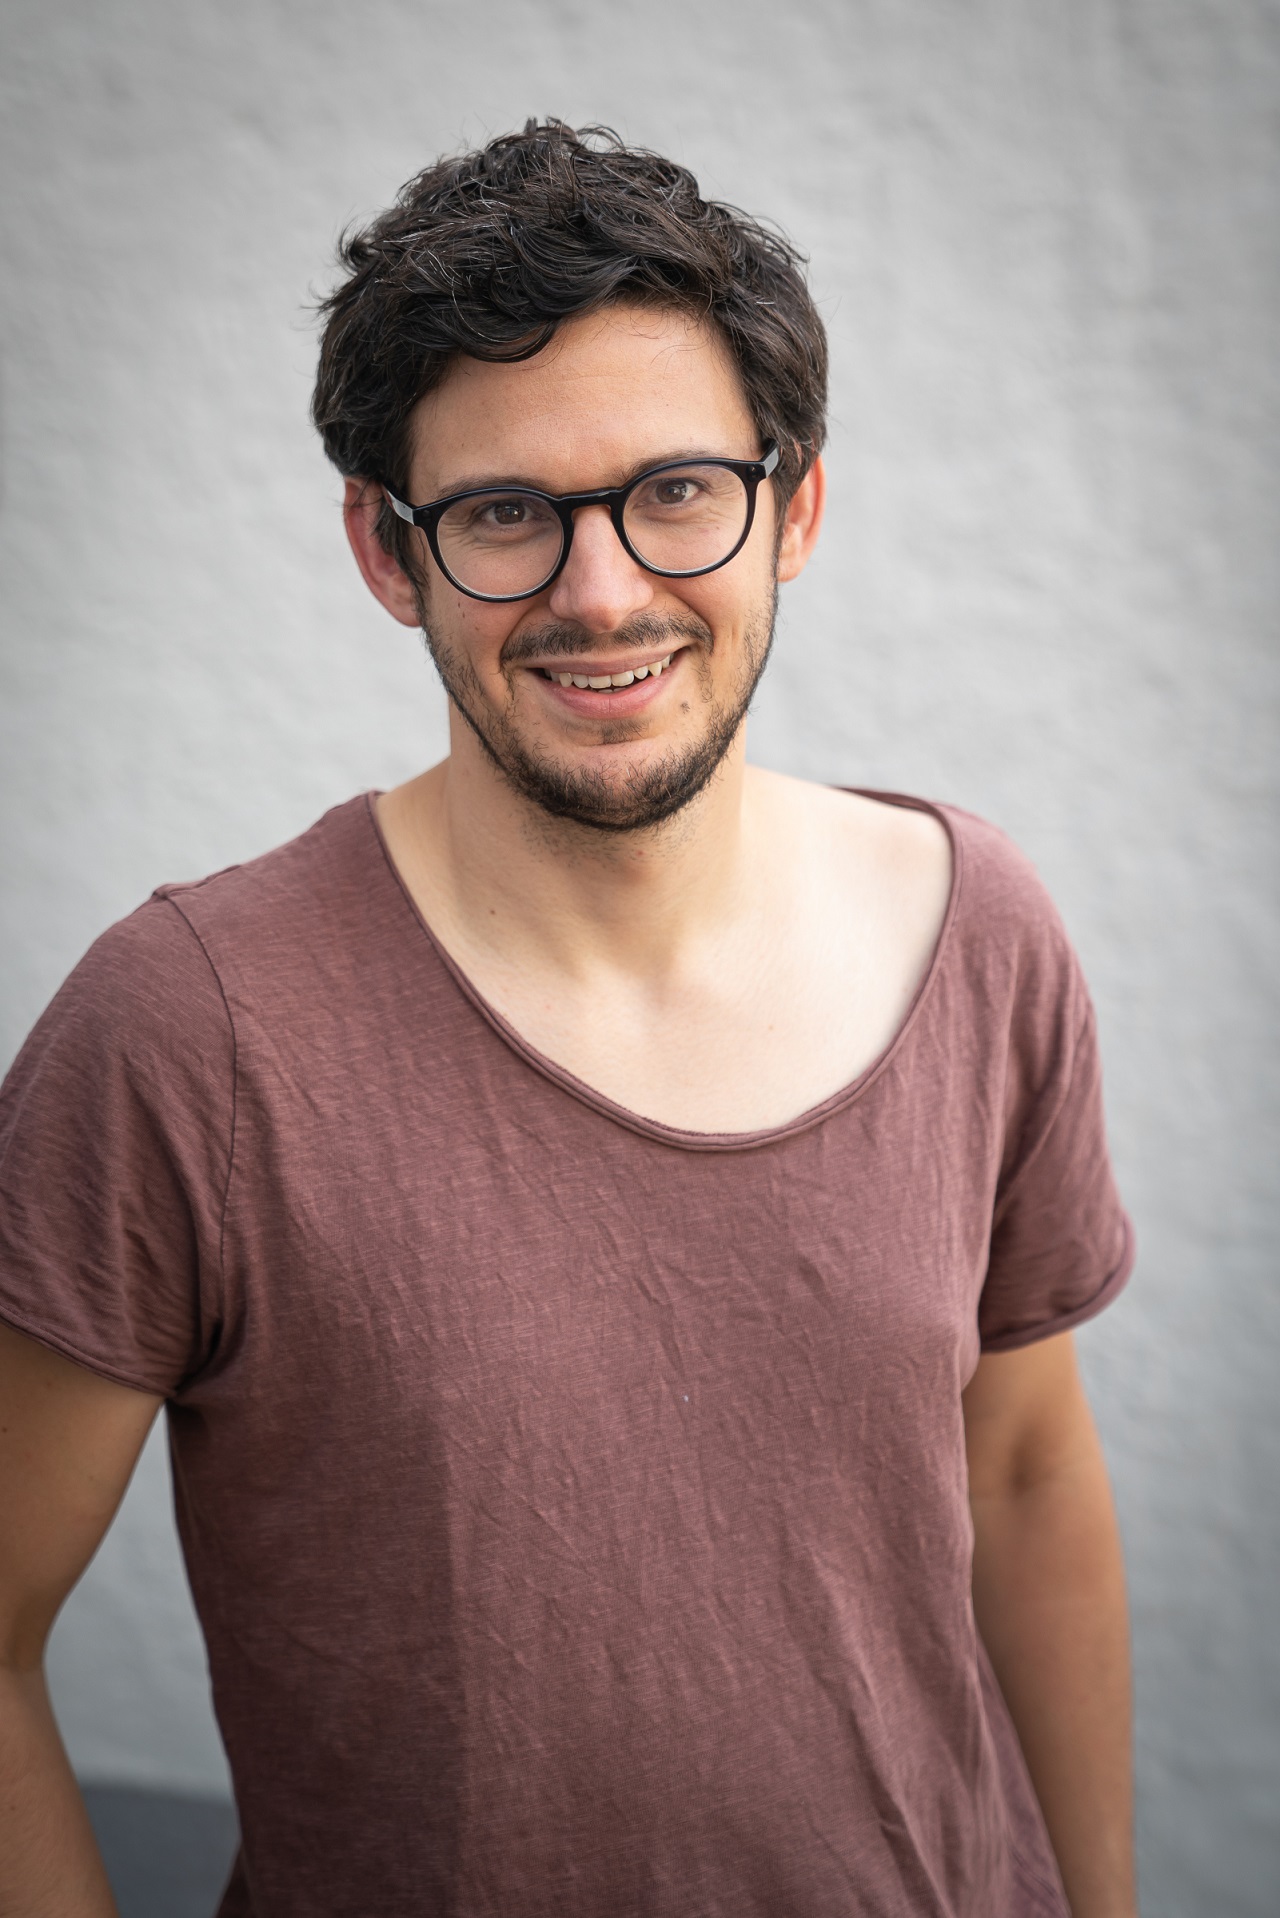 Der Autor Matthias Gruber lächelt und trägt eine Brille.